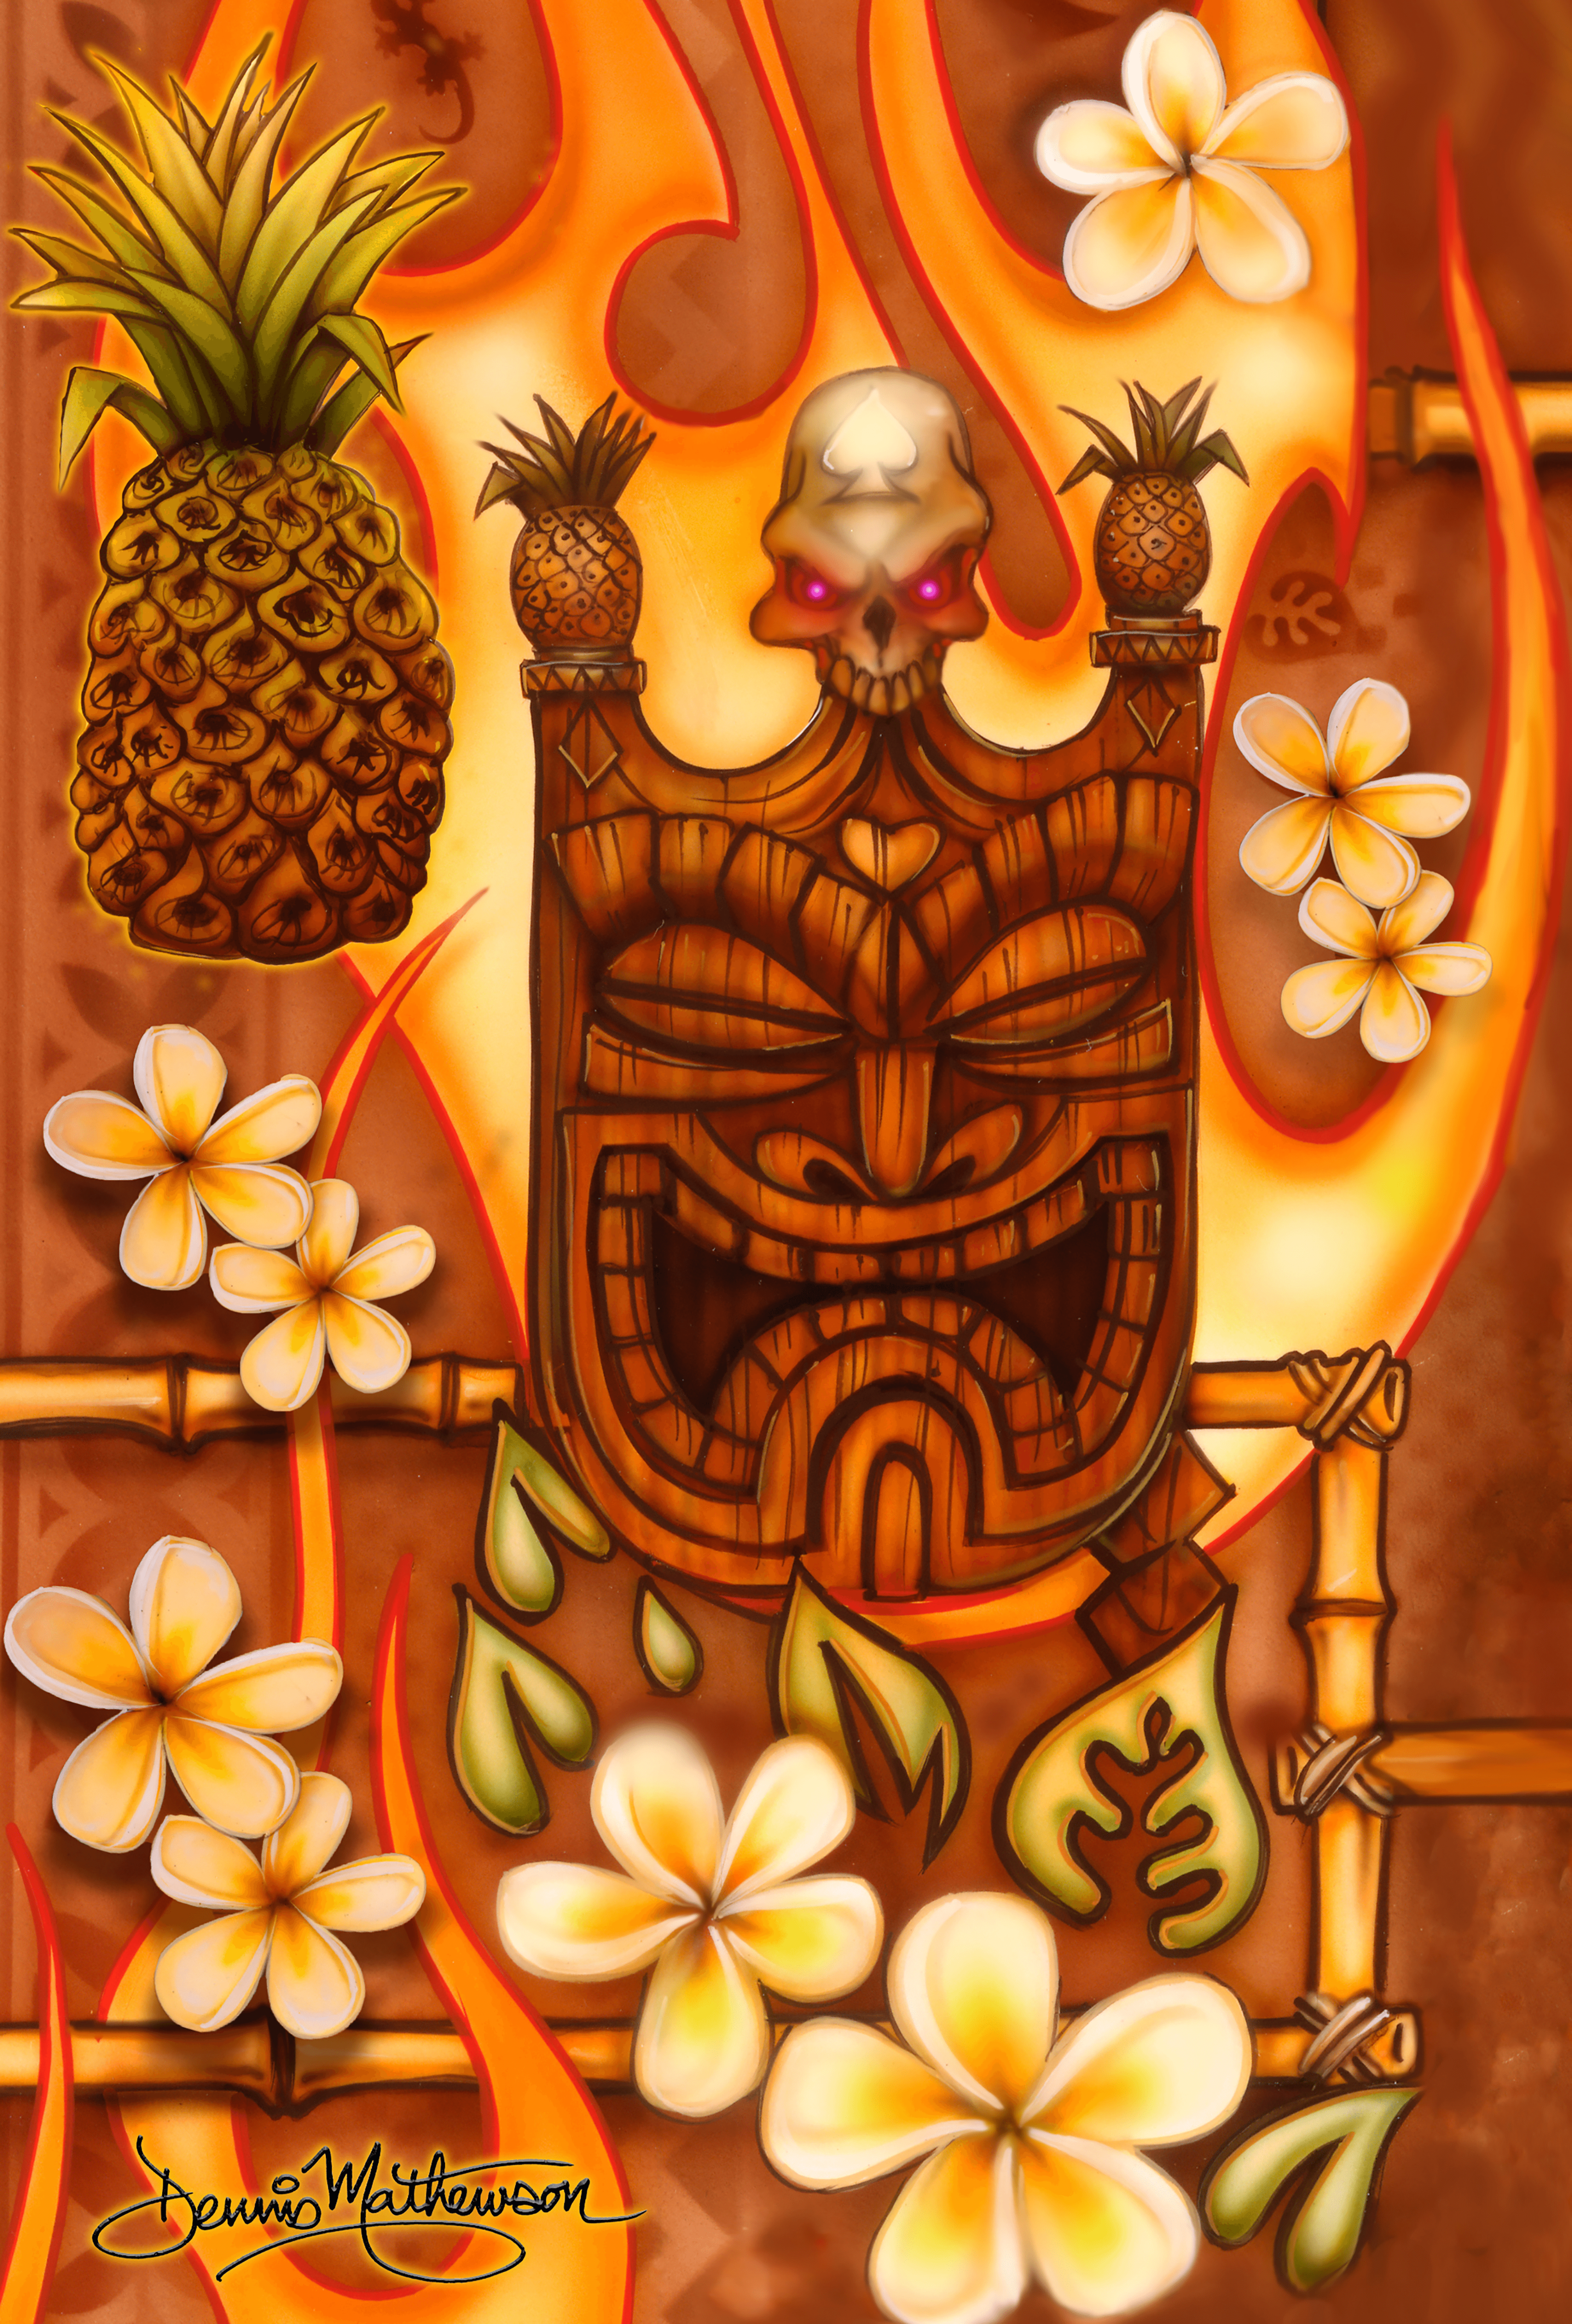 Aloha Tiki - original 